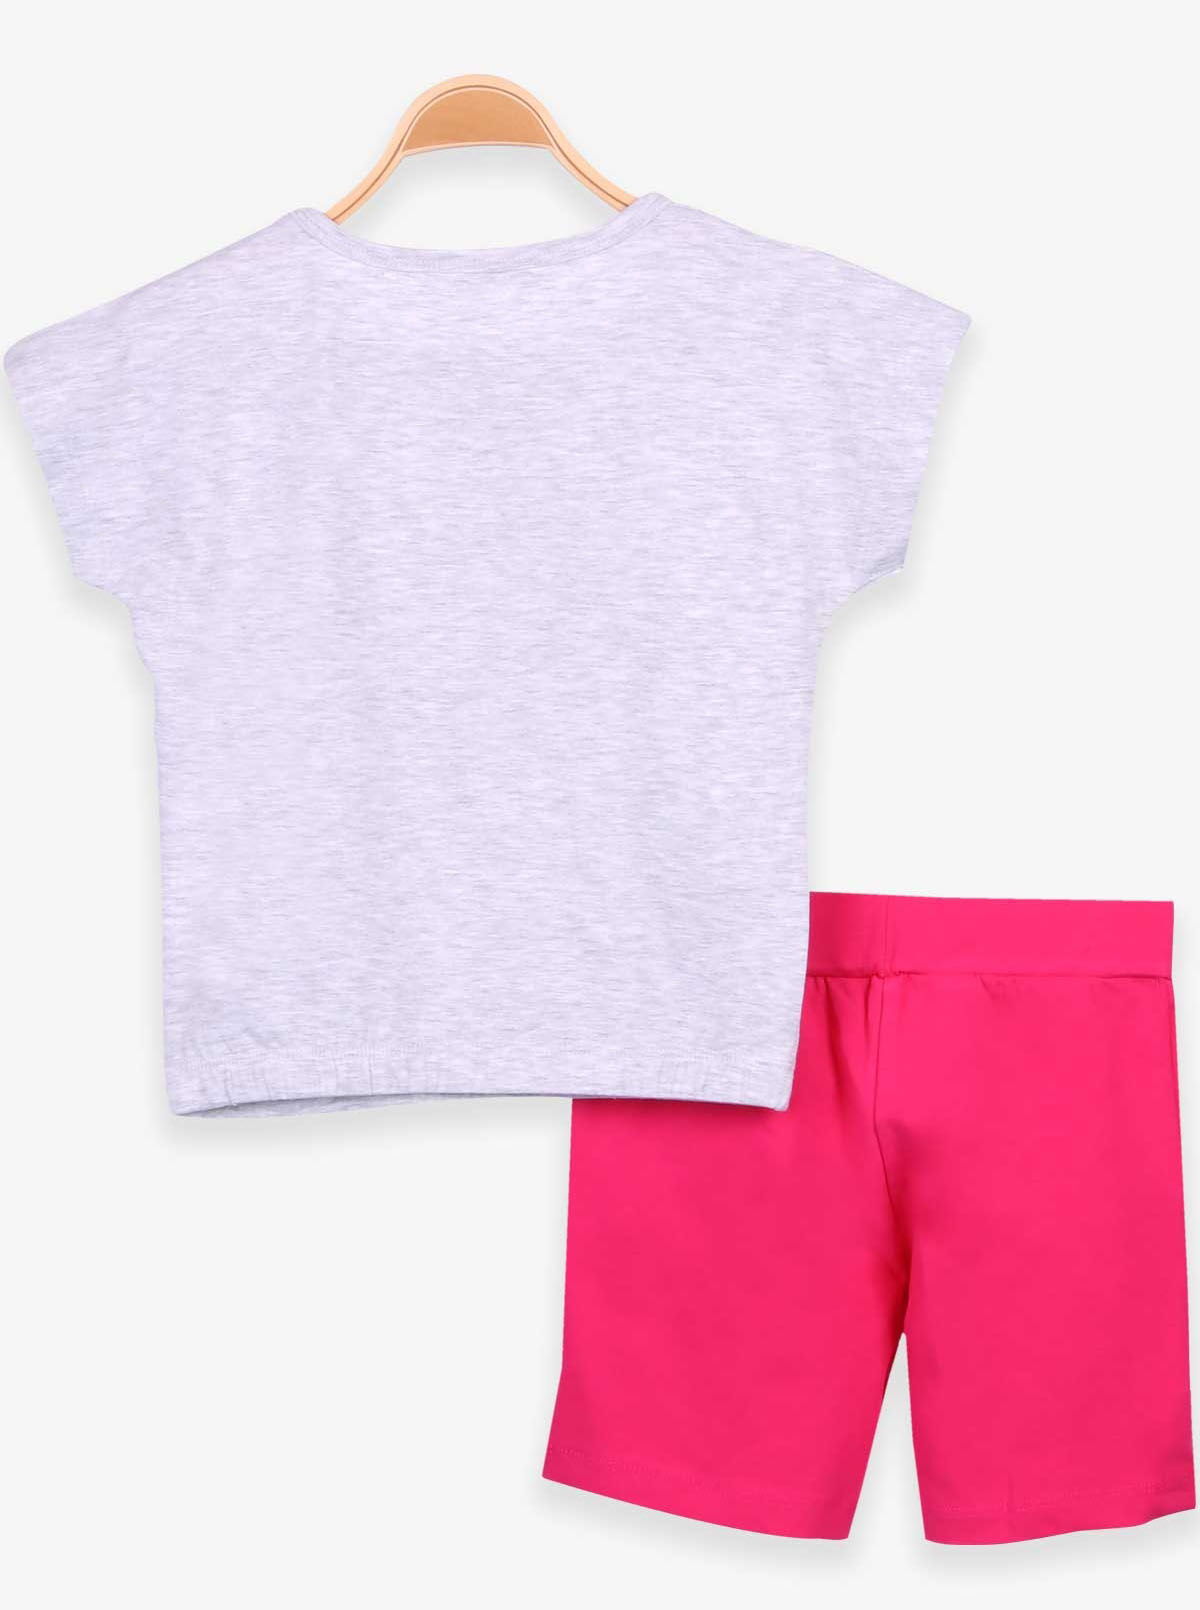 Комплект футболка и шорты для девочки Breeze Фламинго серый 15160 - Киев